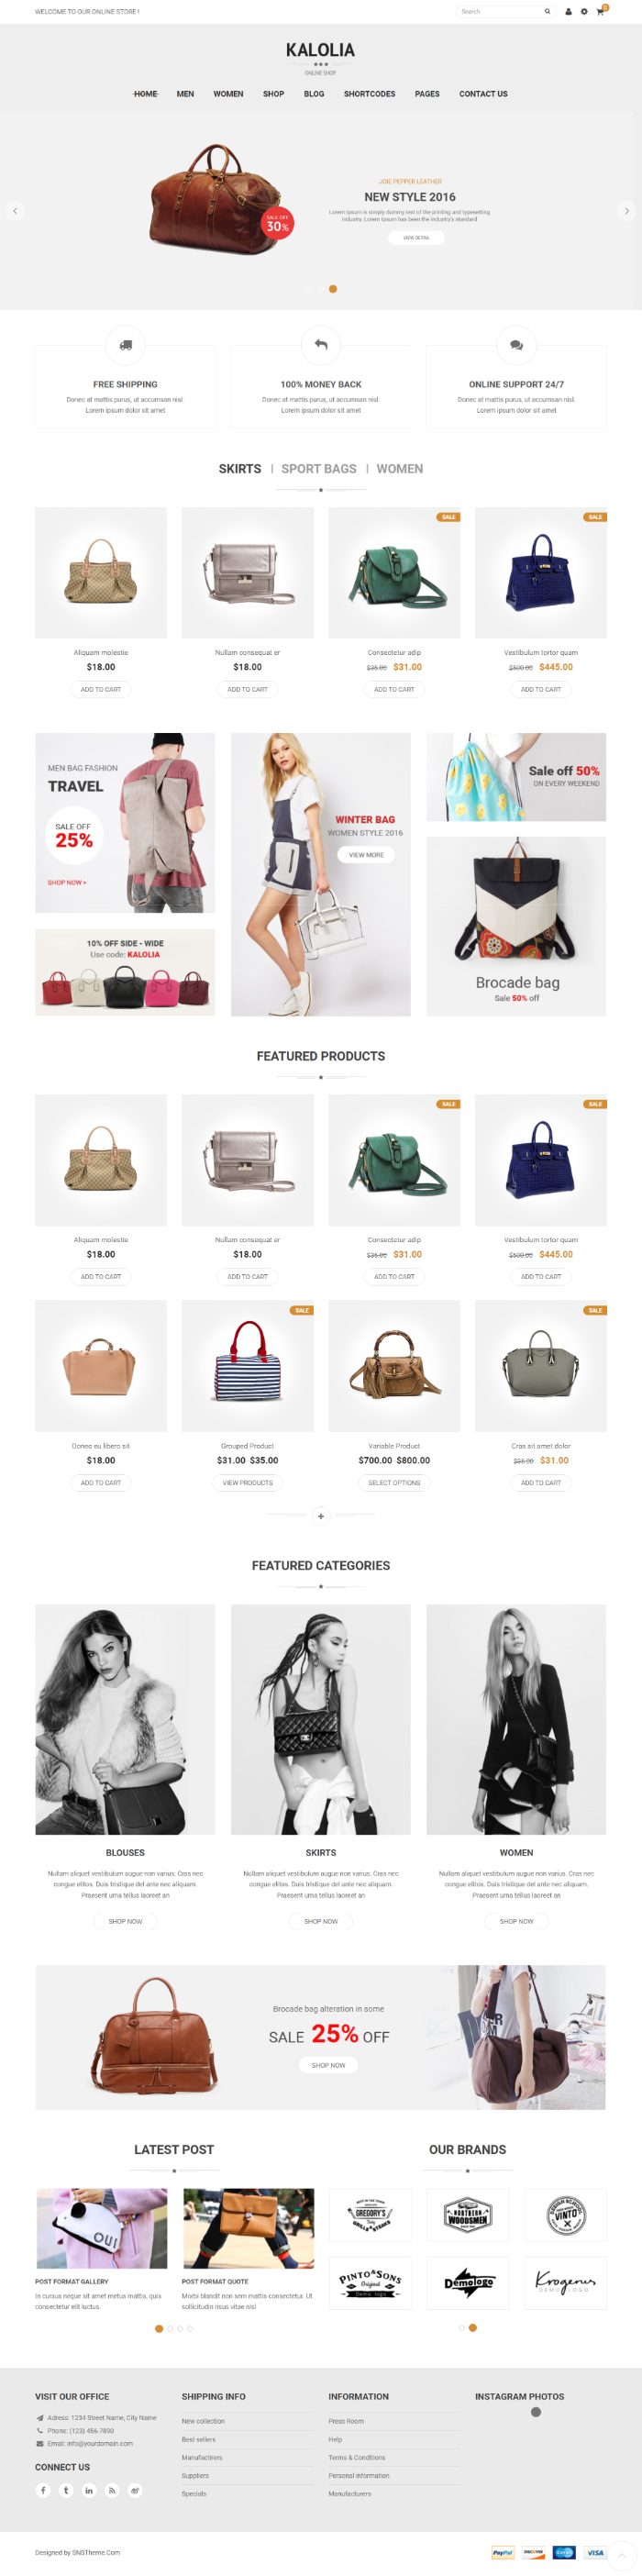 Mẫu website bán hàng túi xách - SNS Kalolia 3